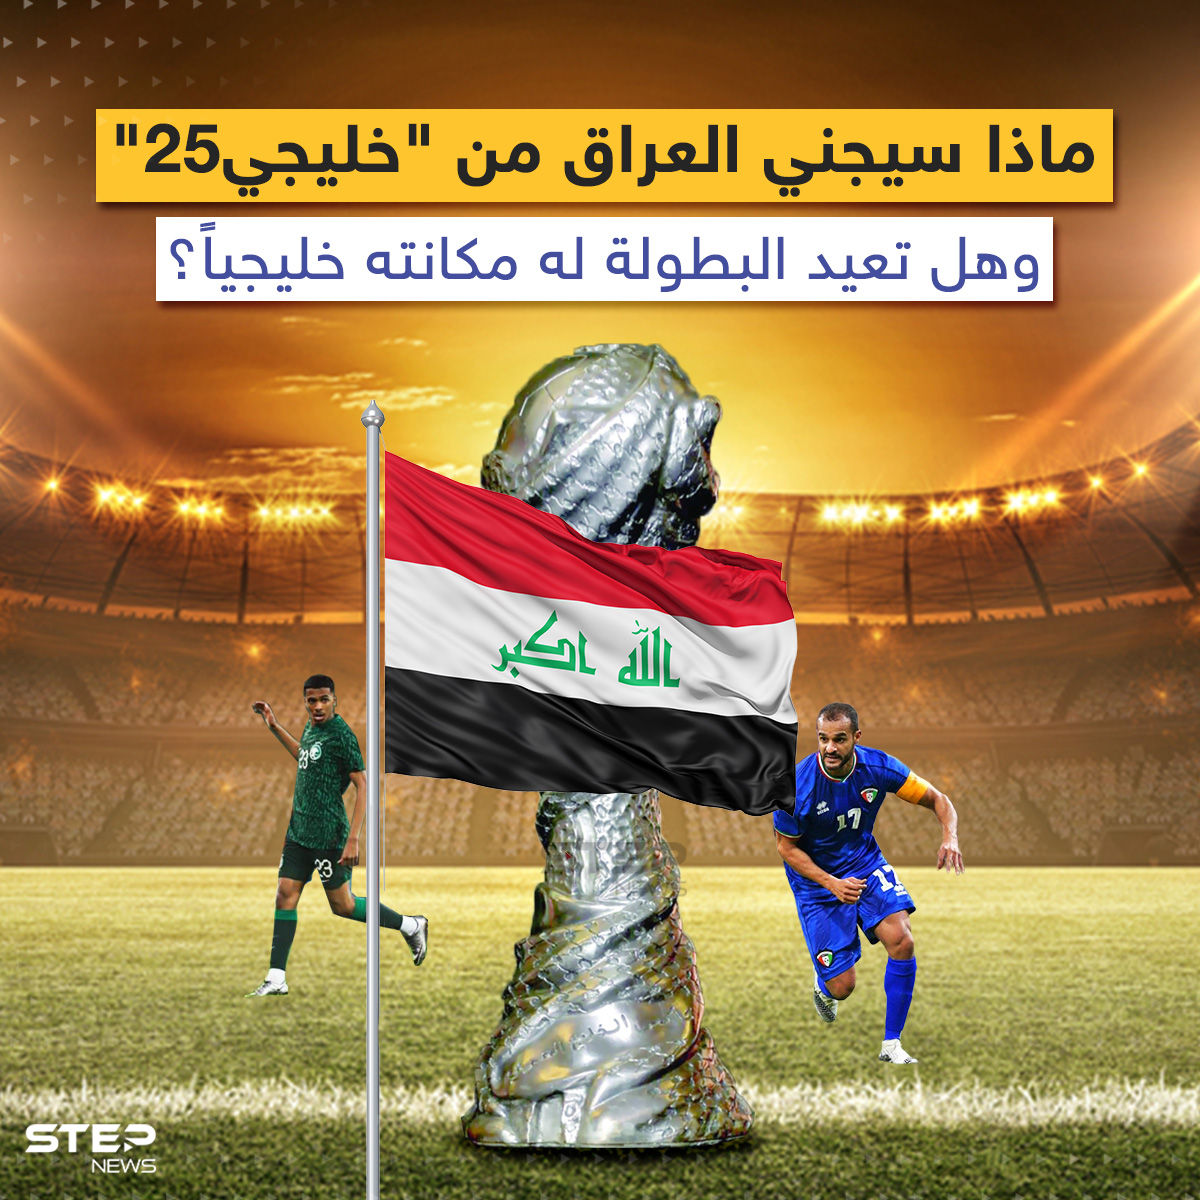 ماذا سيجني العراق من "خليجي25" سياسياً واقتصادياً ورياضياً؟ وهل تعيد له البطولة مكانته خليجياً؟